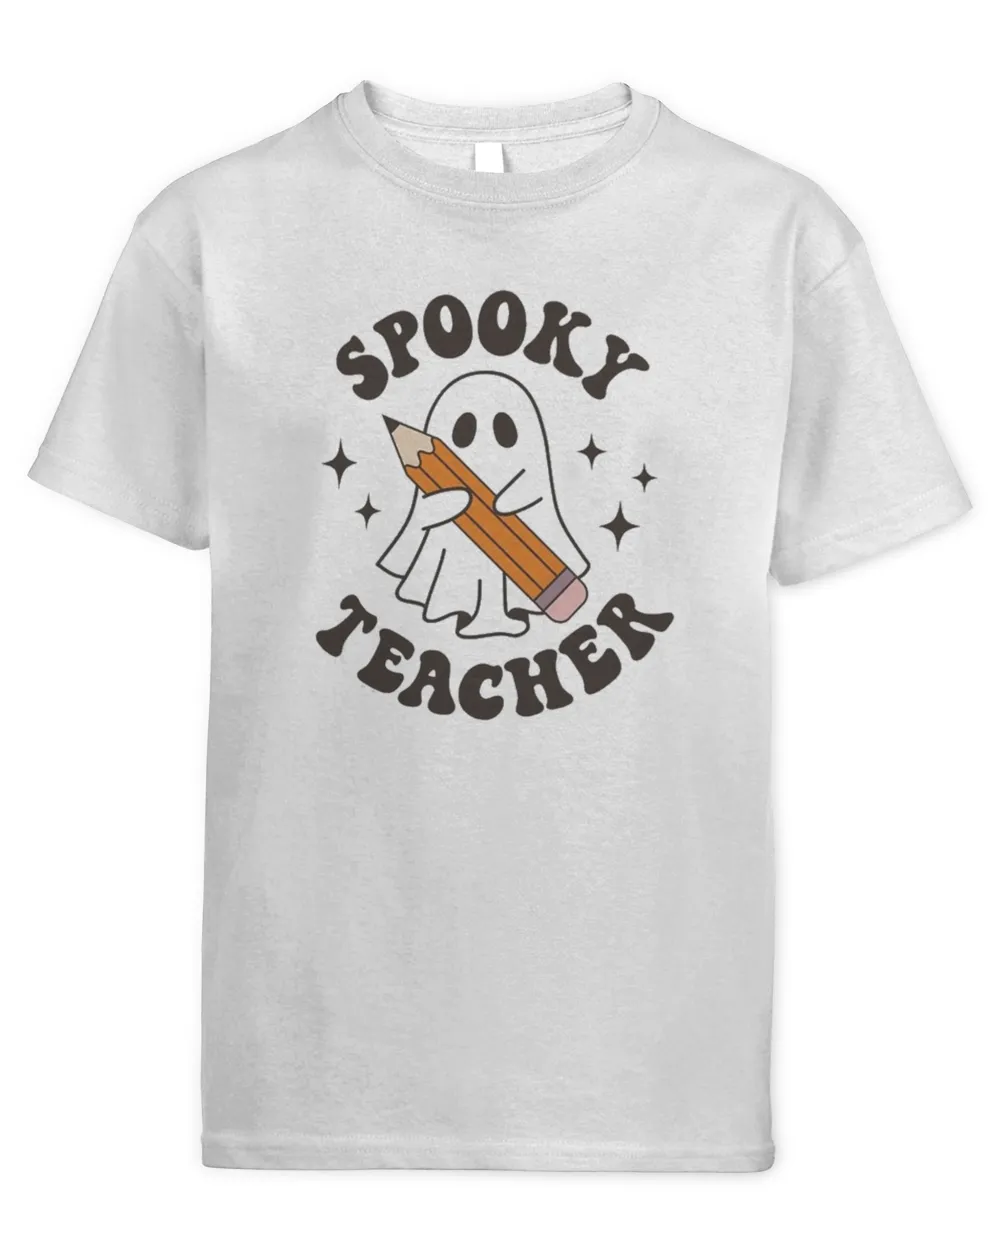 Spooky Teacher Ghost Teacher Halloween Tee Shirt